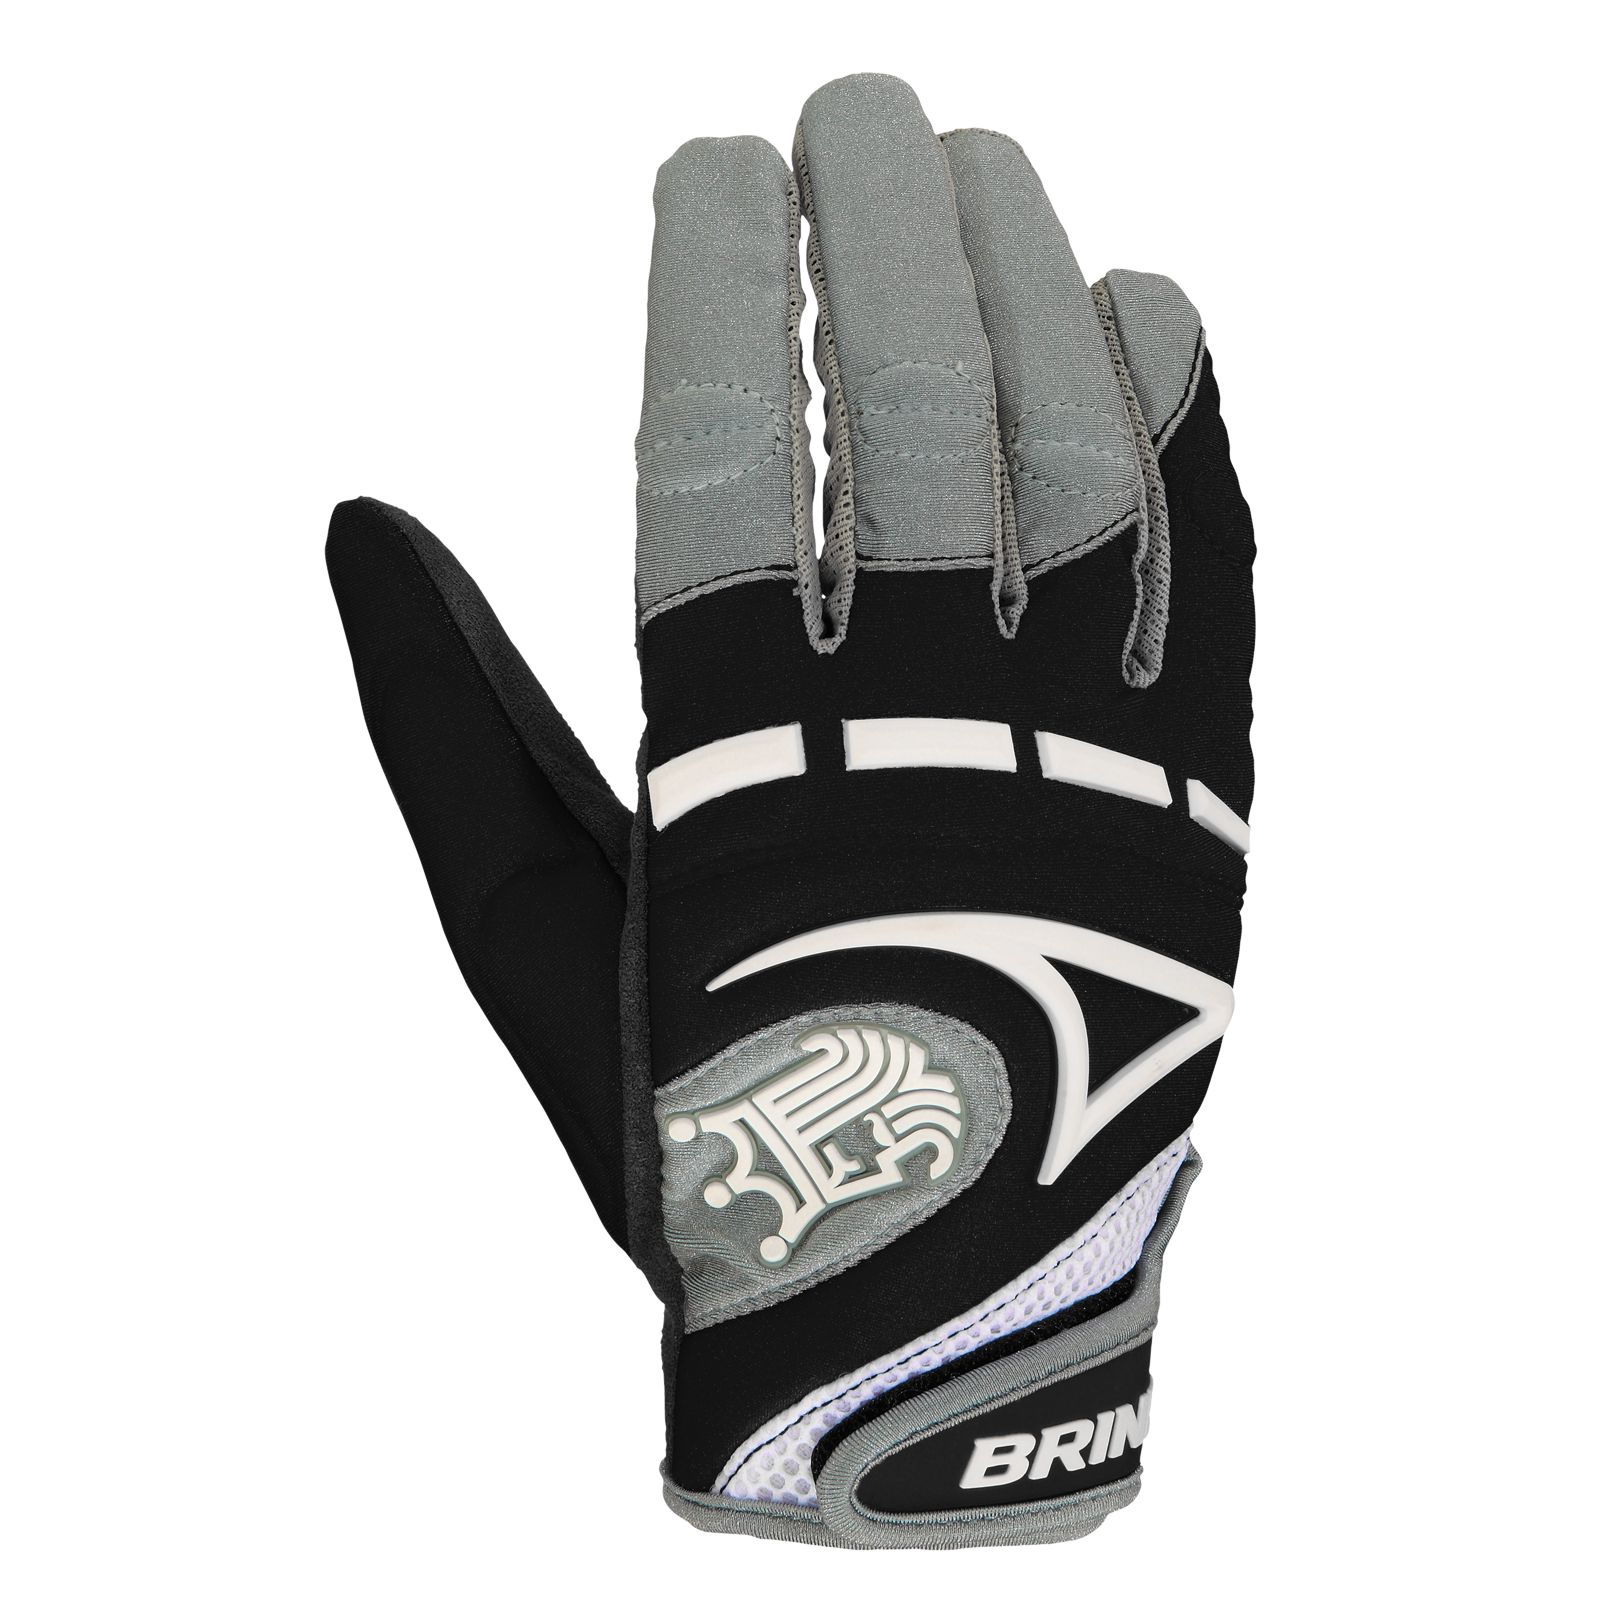 Mantra Glove, Black image number 0